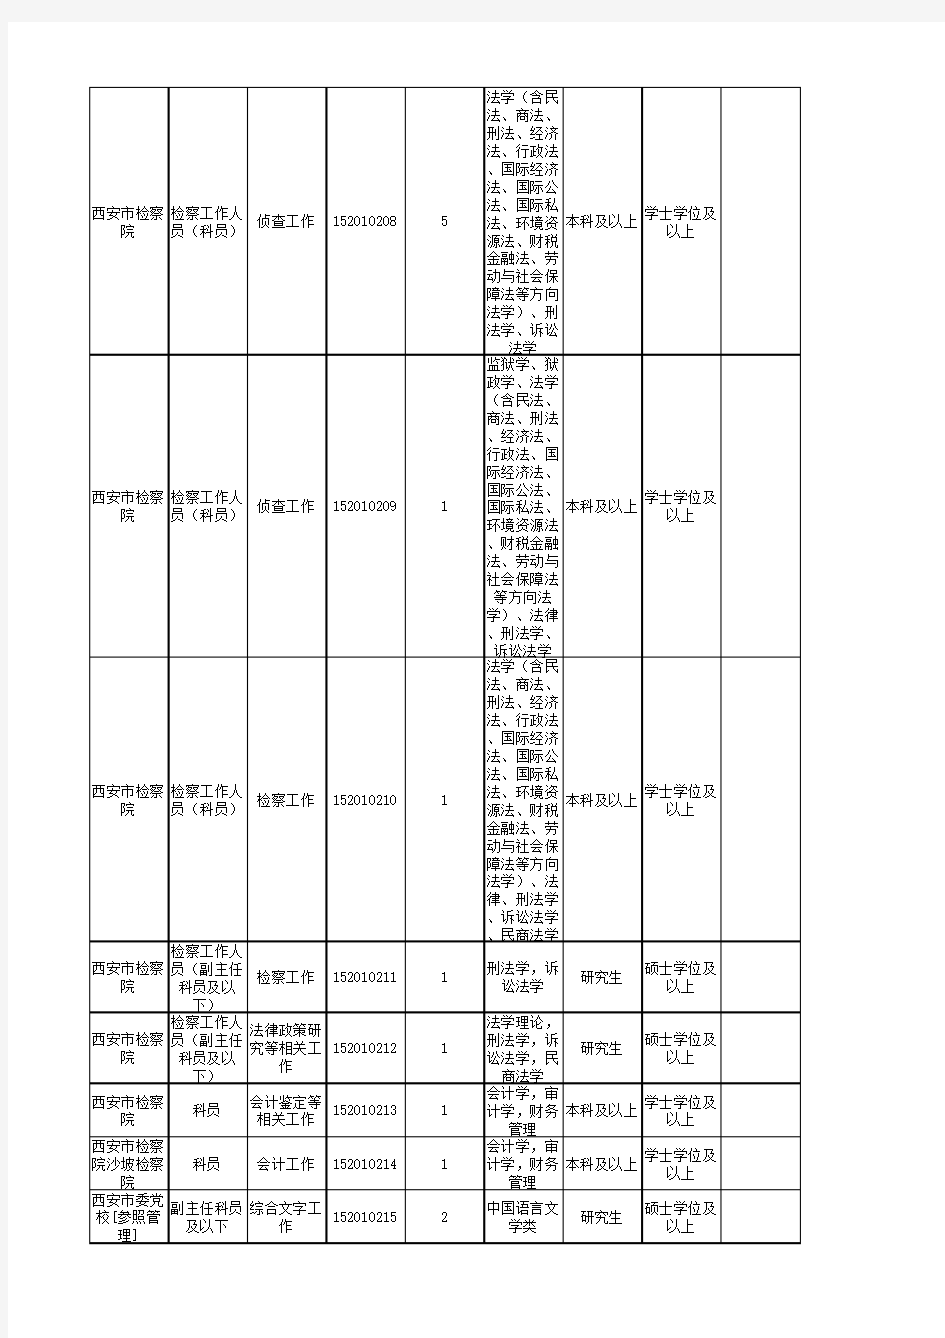 2015年陕西公务员考试职位表(党群系统)